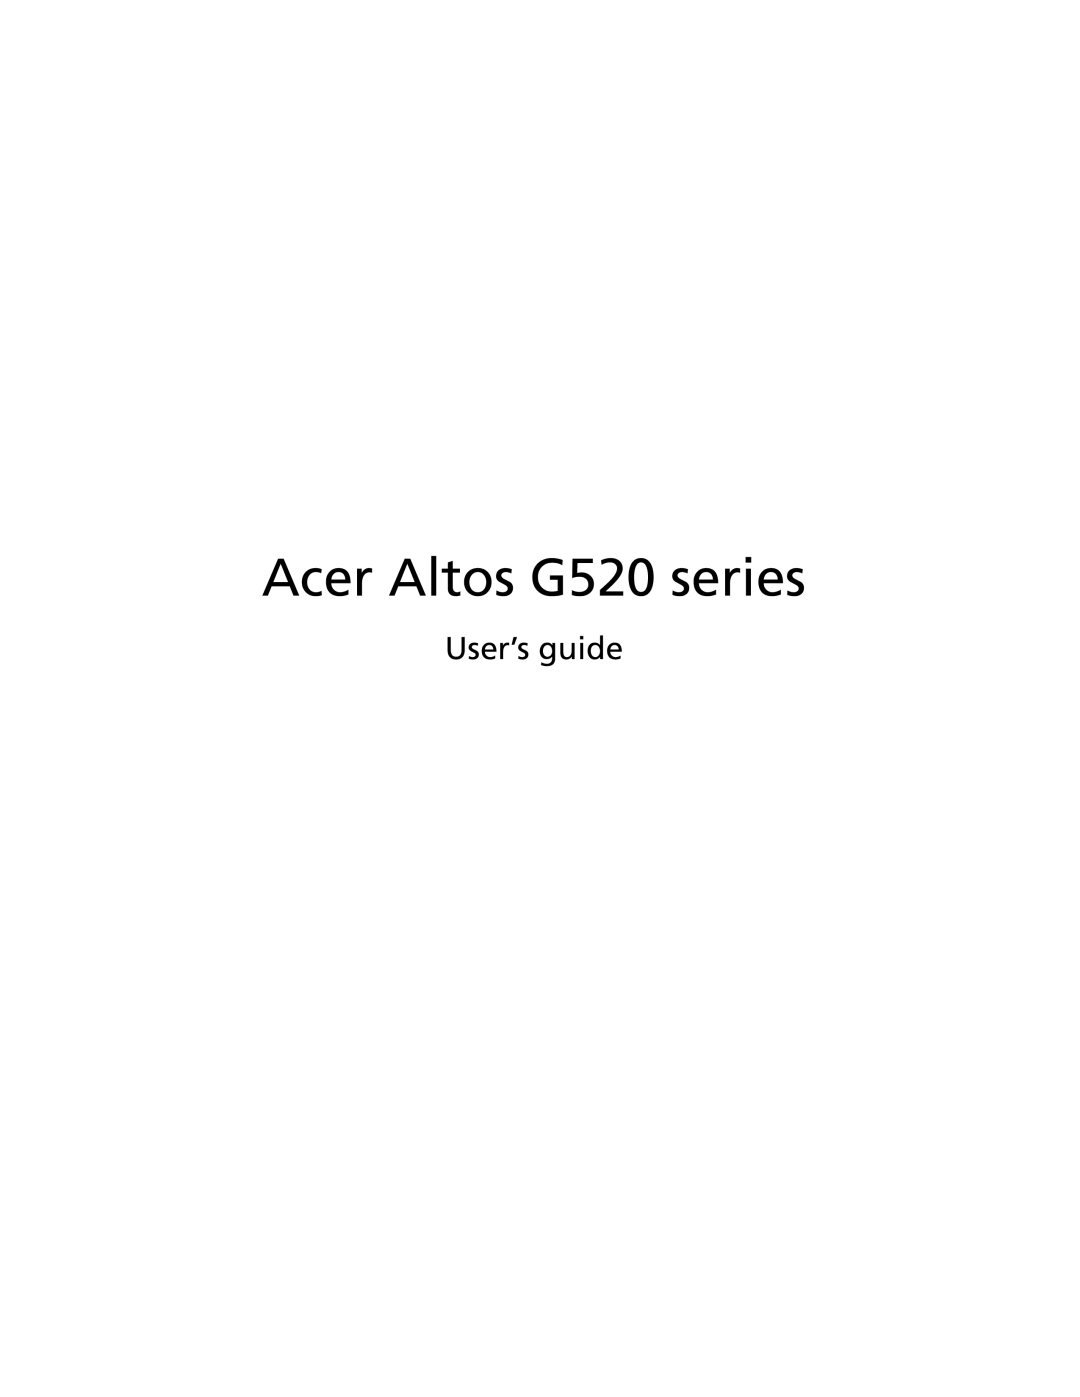 Acer manual Acer Altos G520 series, User’s guide 